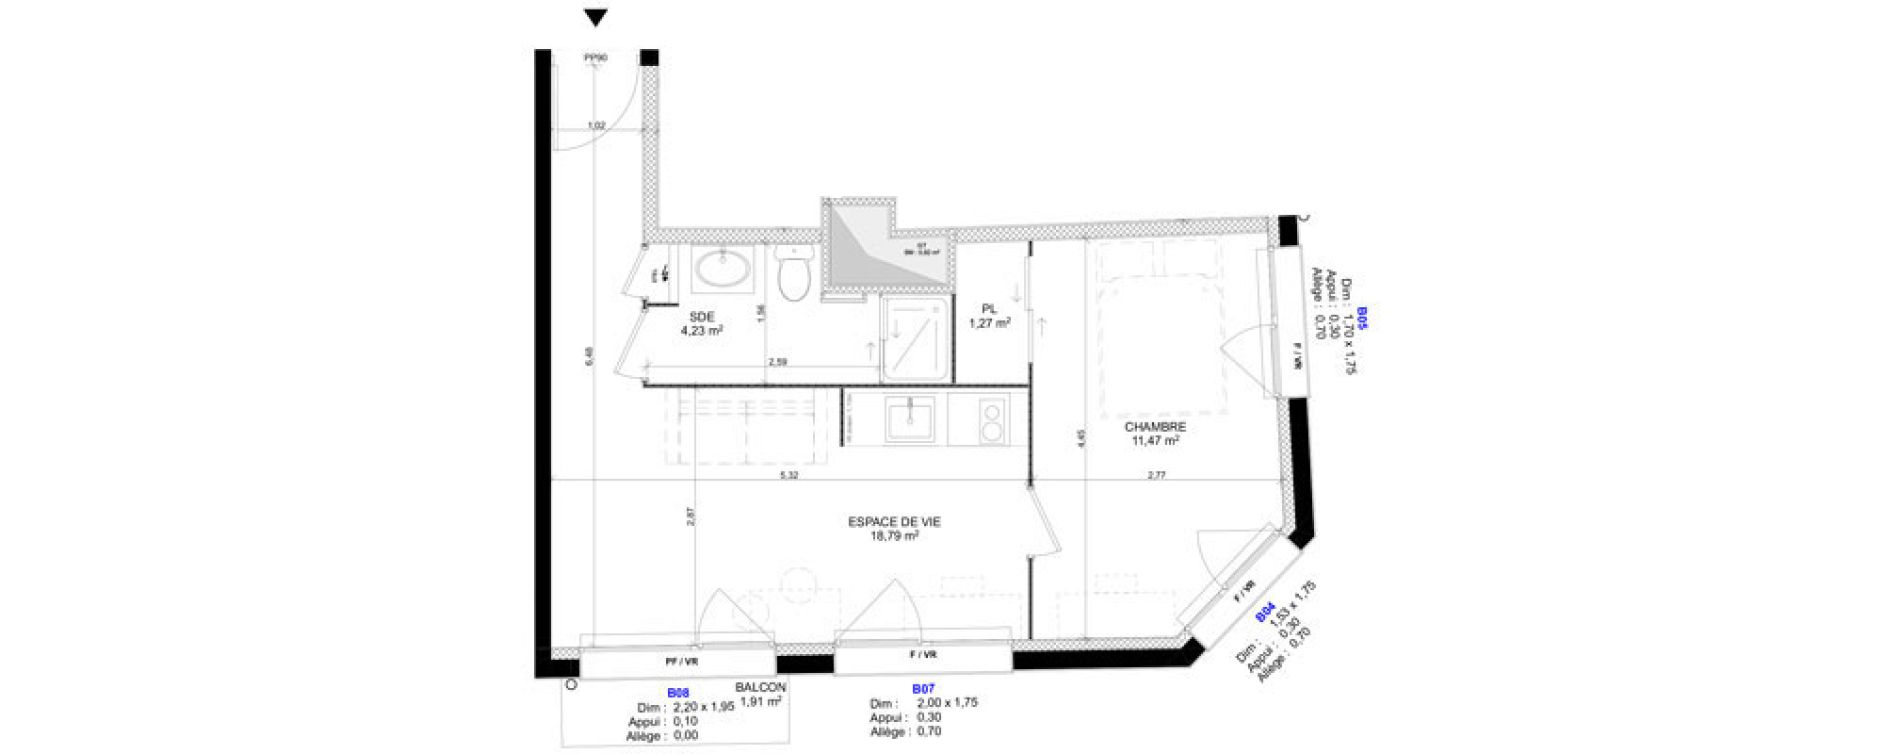 Appartement T2 meubl&eacute; de 35,76 m2 au Havre Sainte marie - saint leon